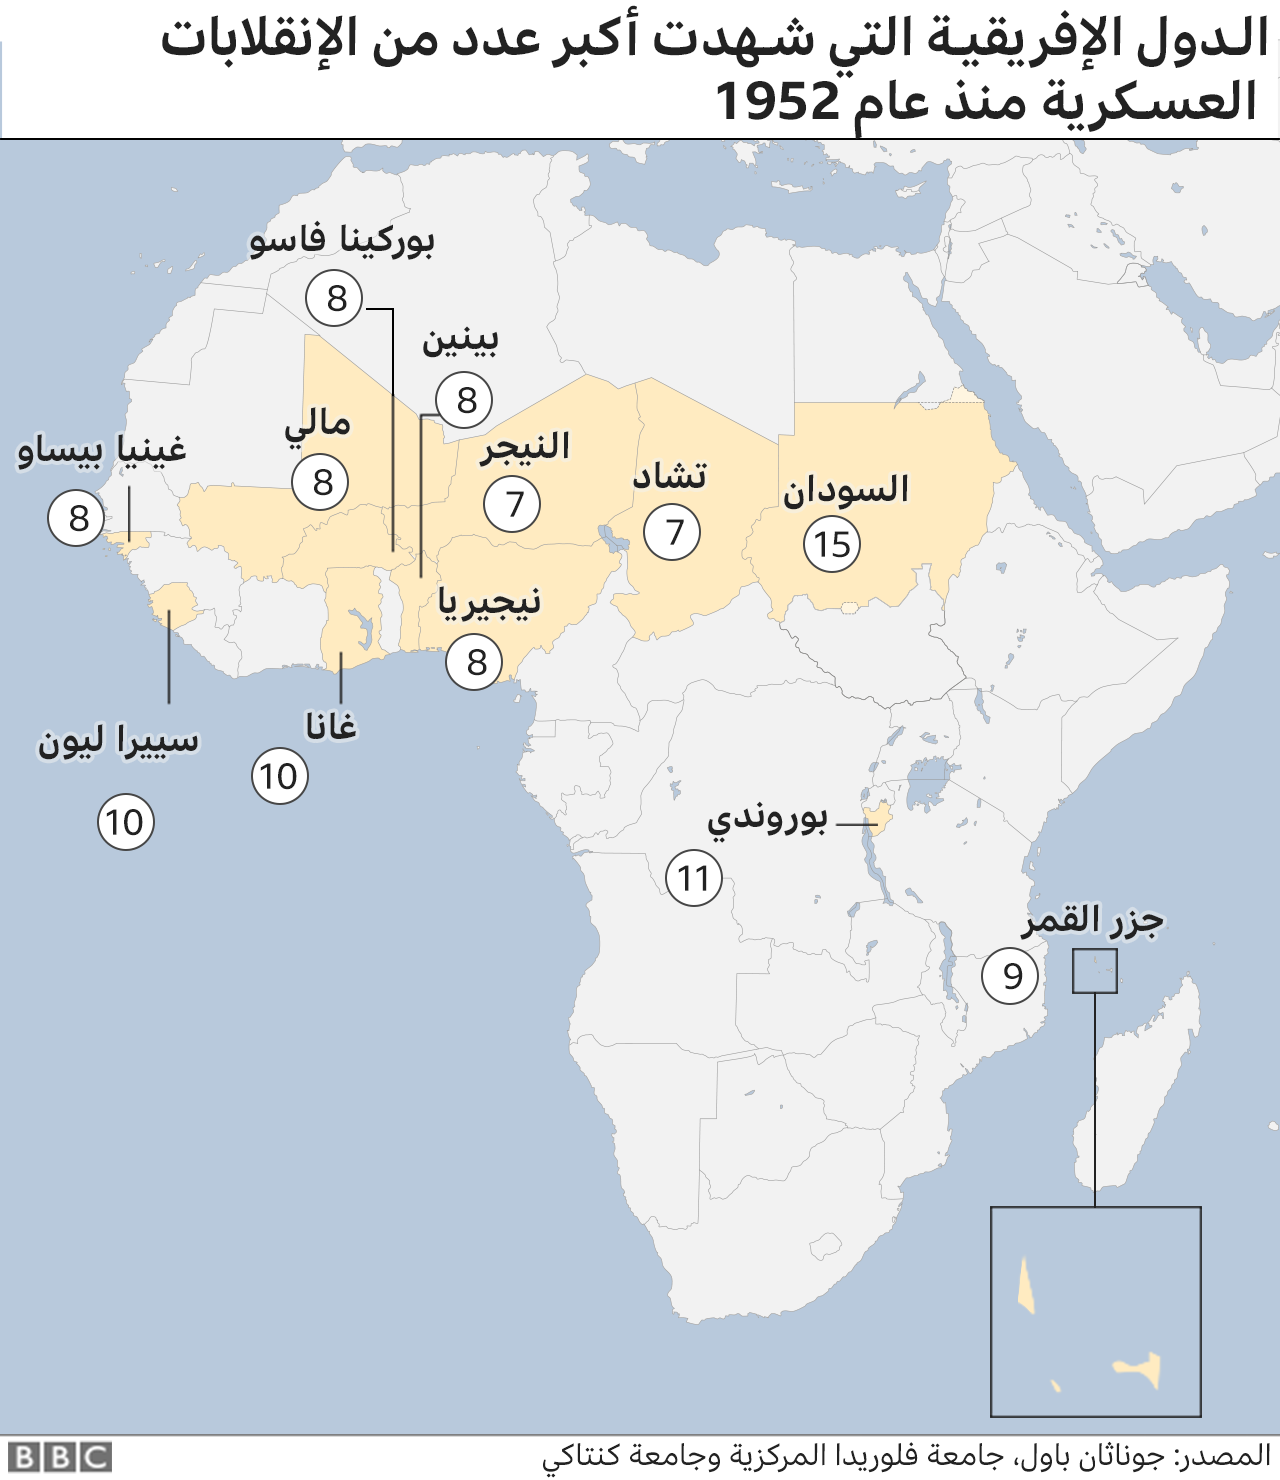 خريطة إفريقيا من حيث البلدان التي وقعت فيها محاولات الانقلاب. مايو/أيار 2021